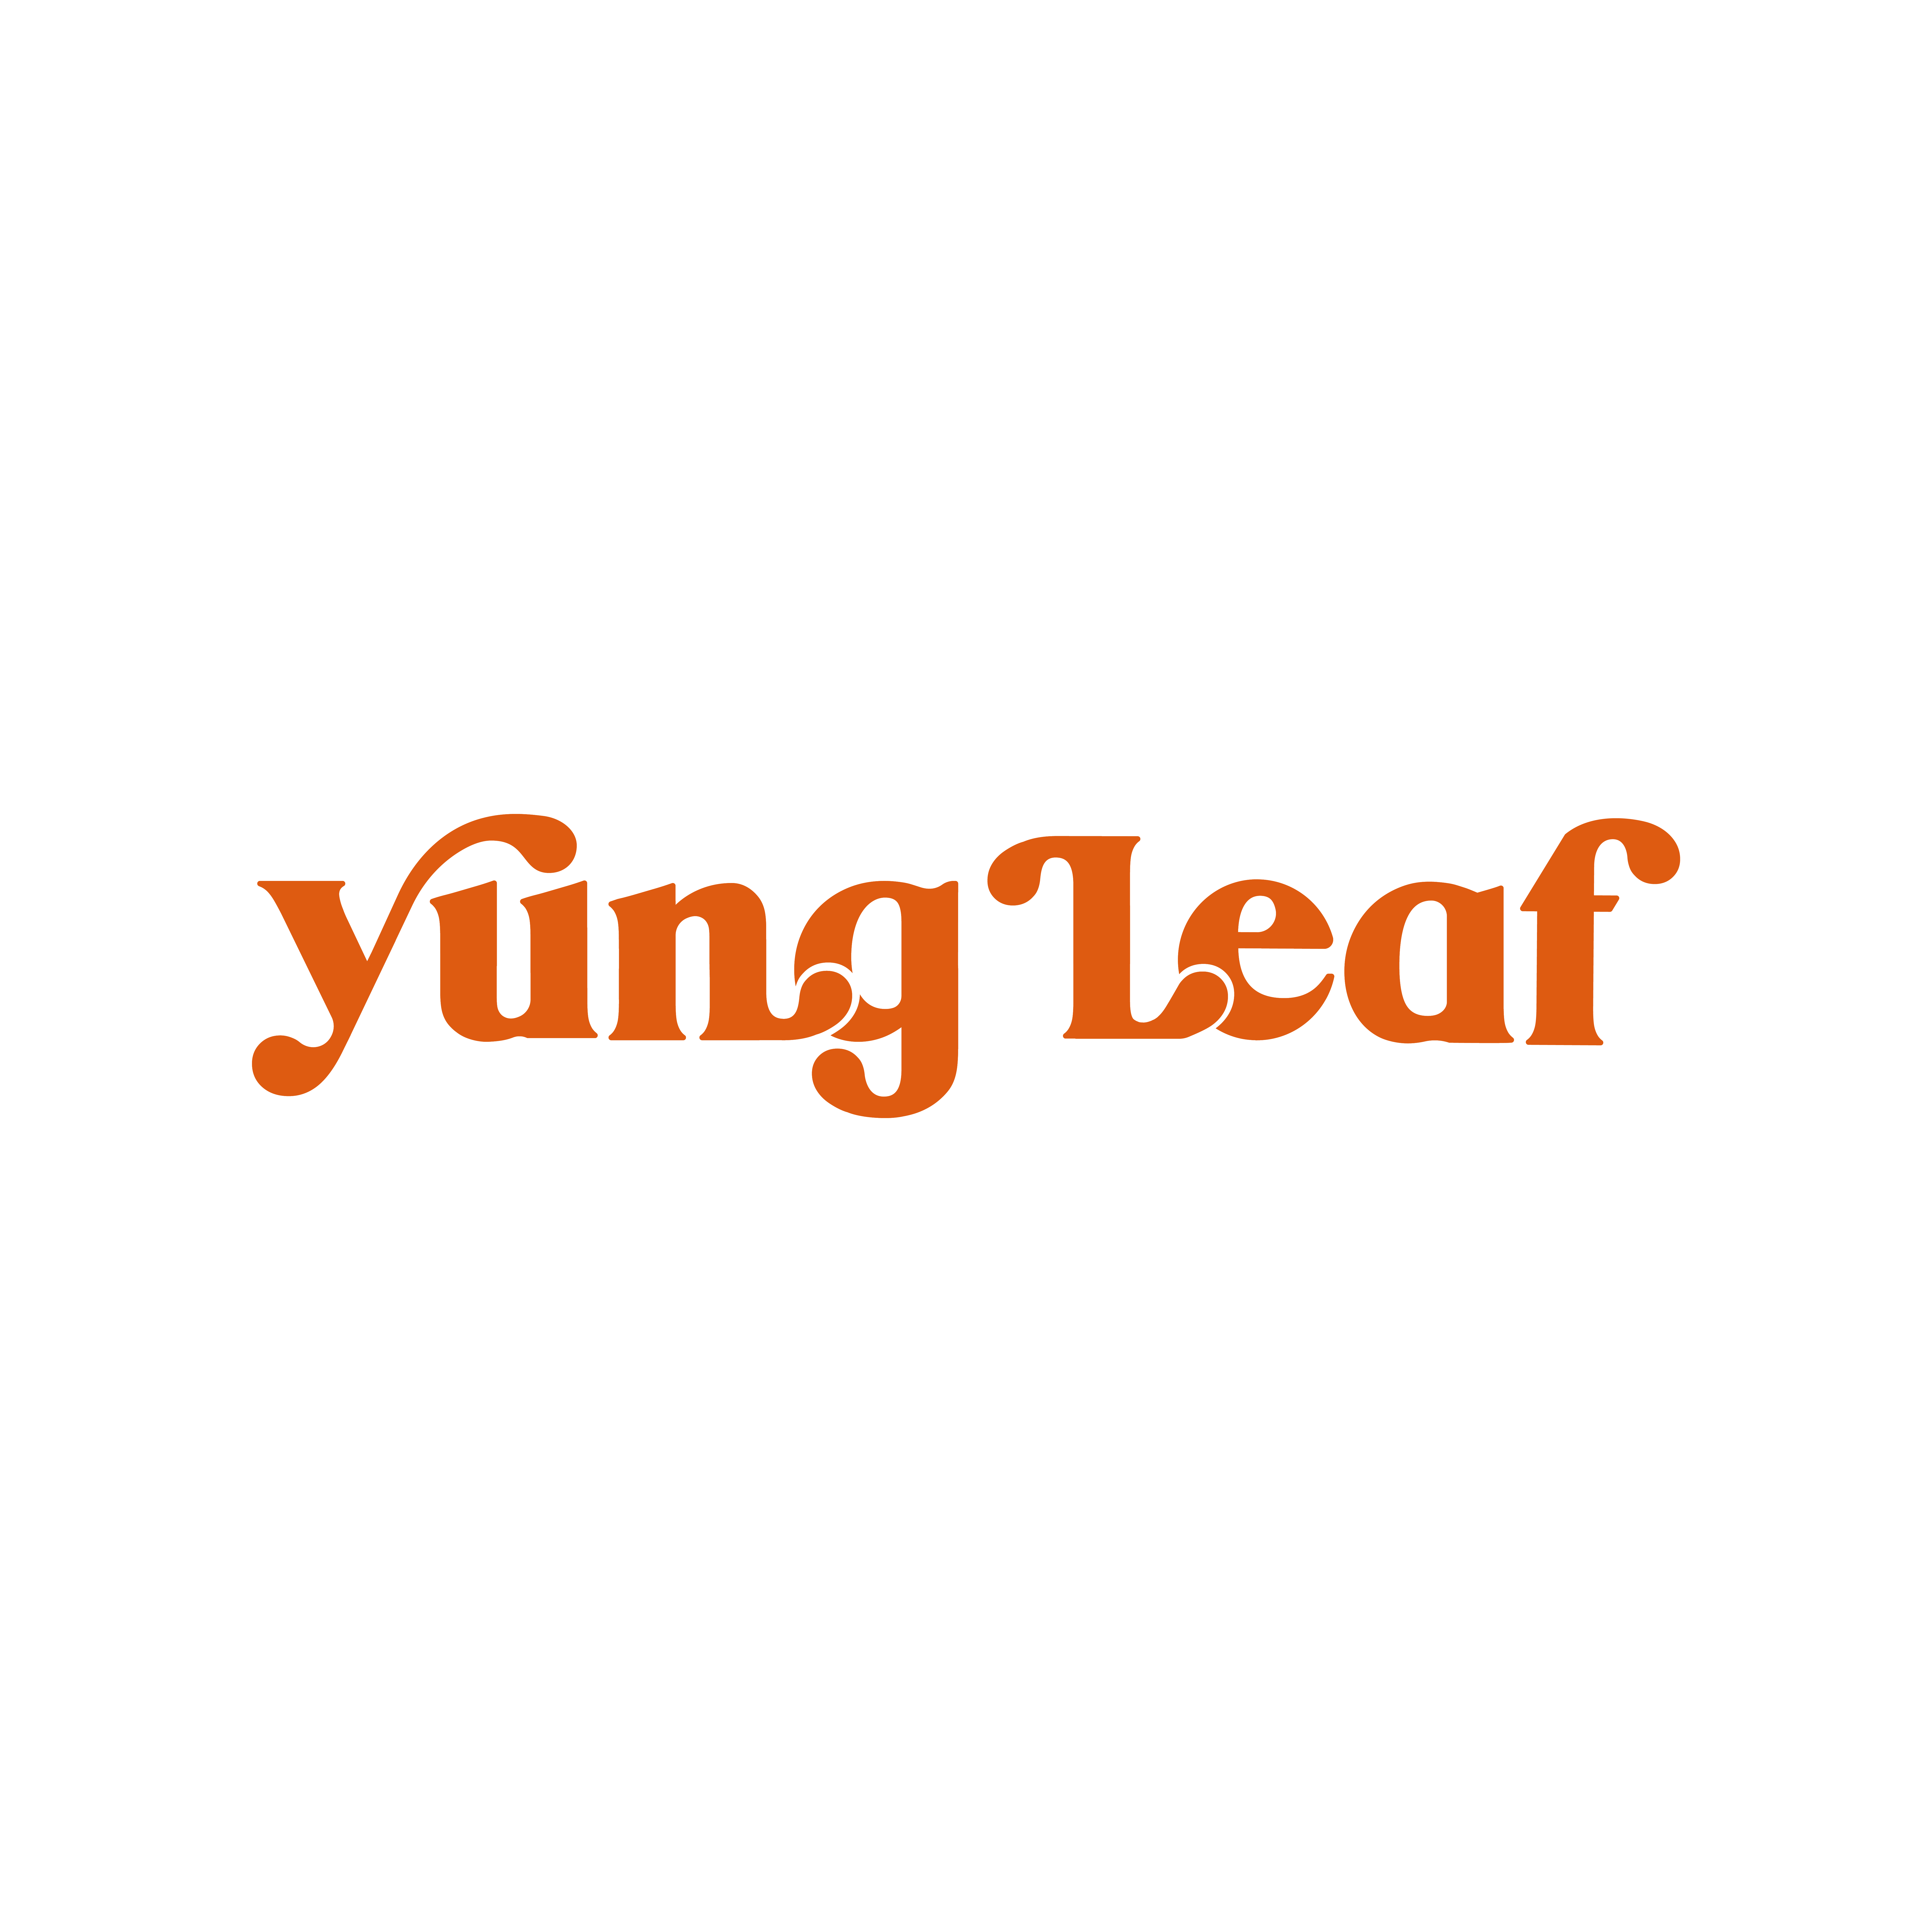 Yung Leaf